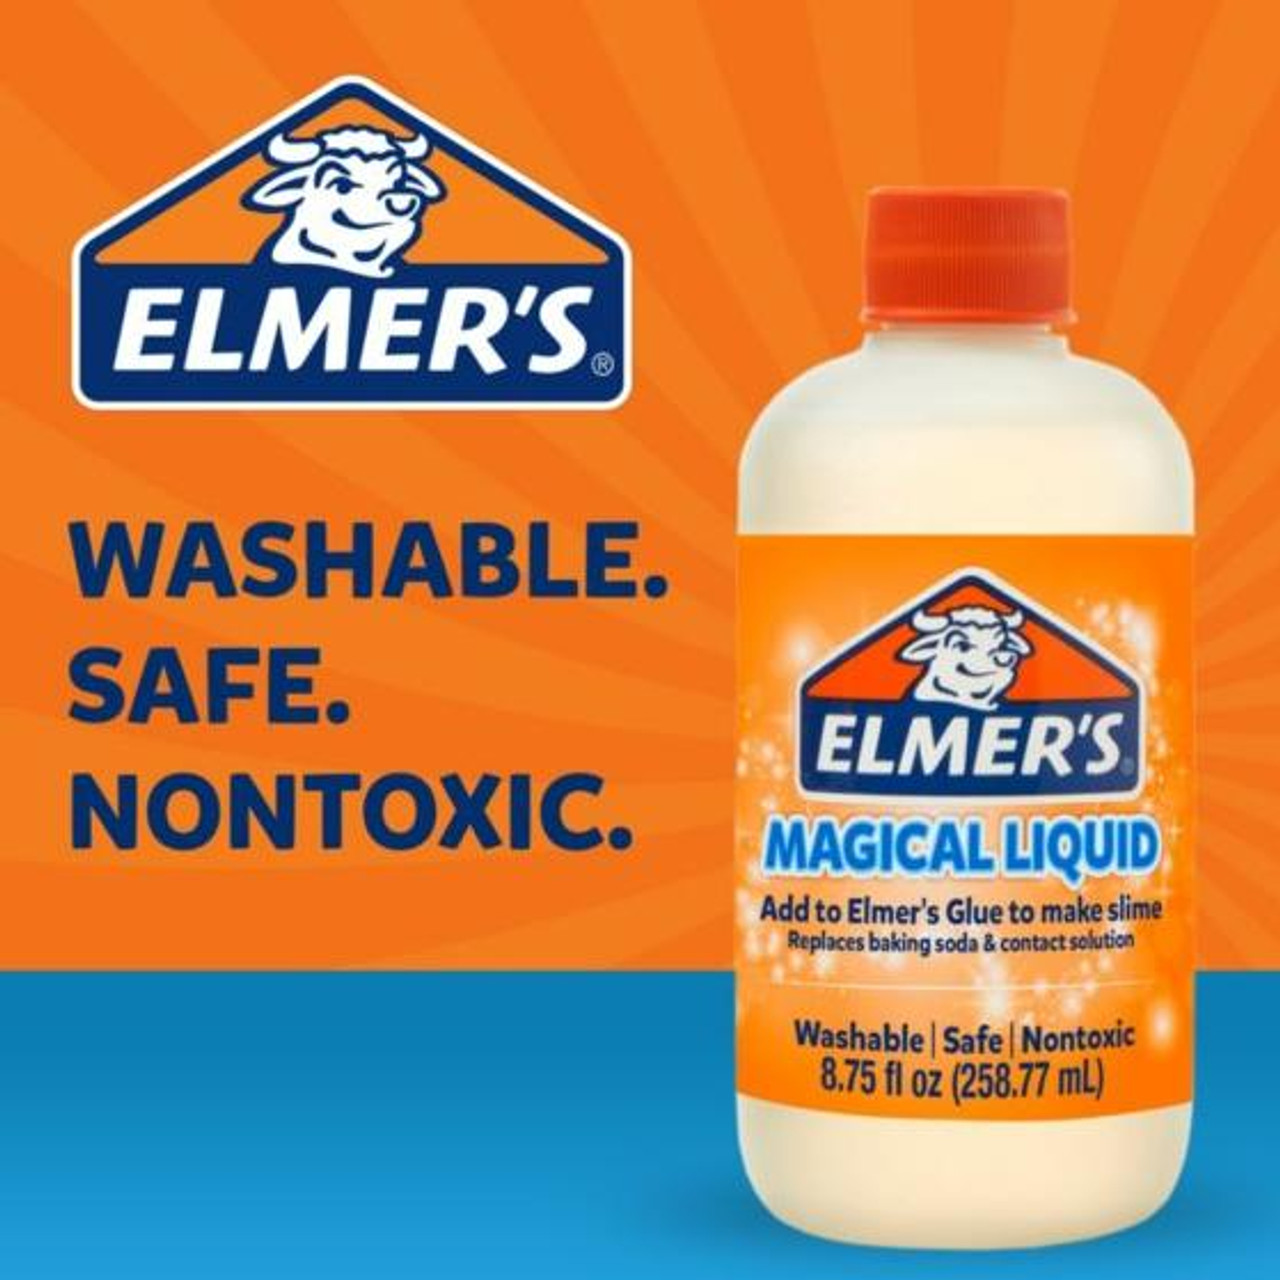 ELMERS MAGICAL LIQUID Glow Slime Activator 9 oz Washable Safe Nontoxic New  $7.00 - PicClick